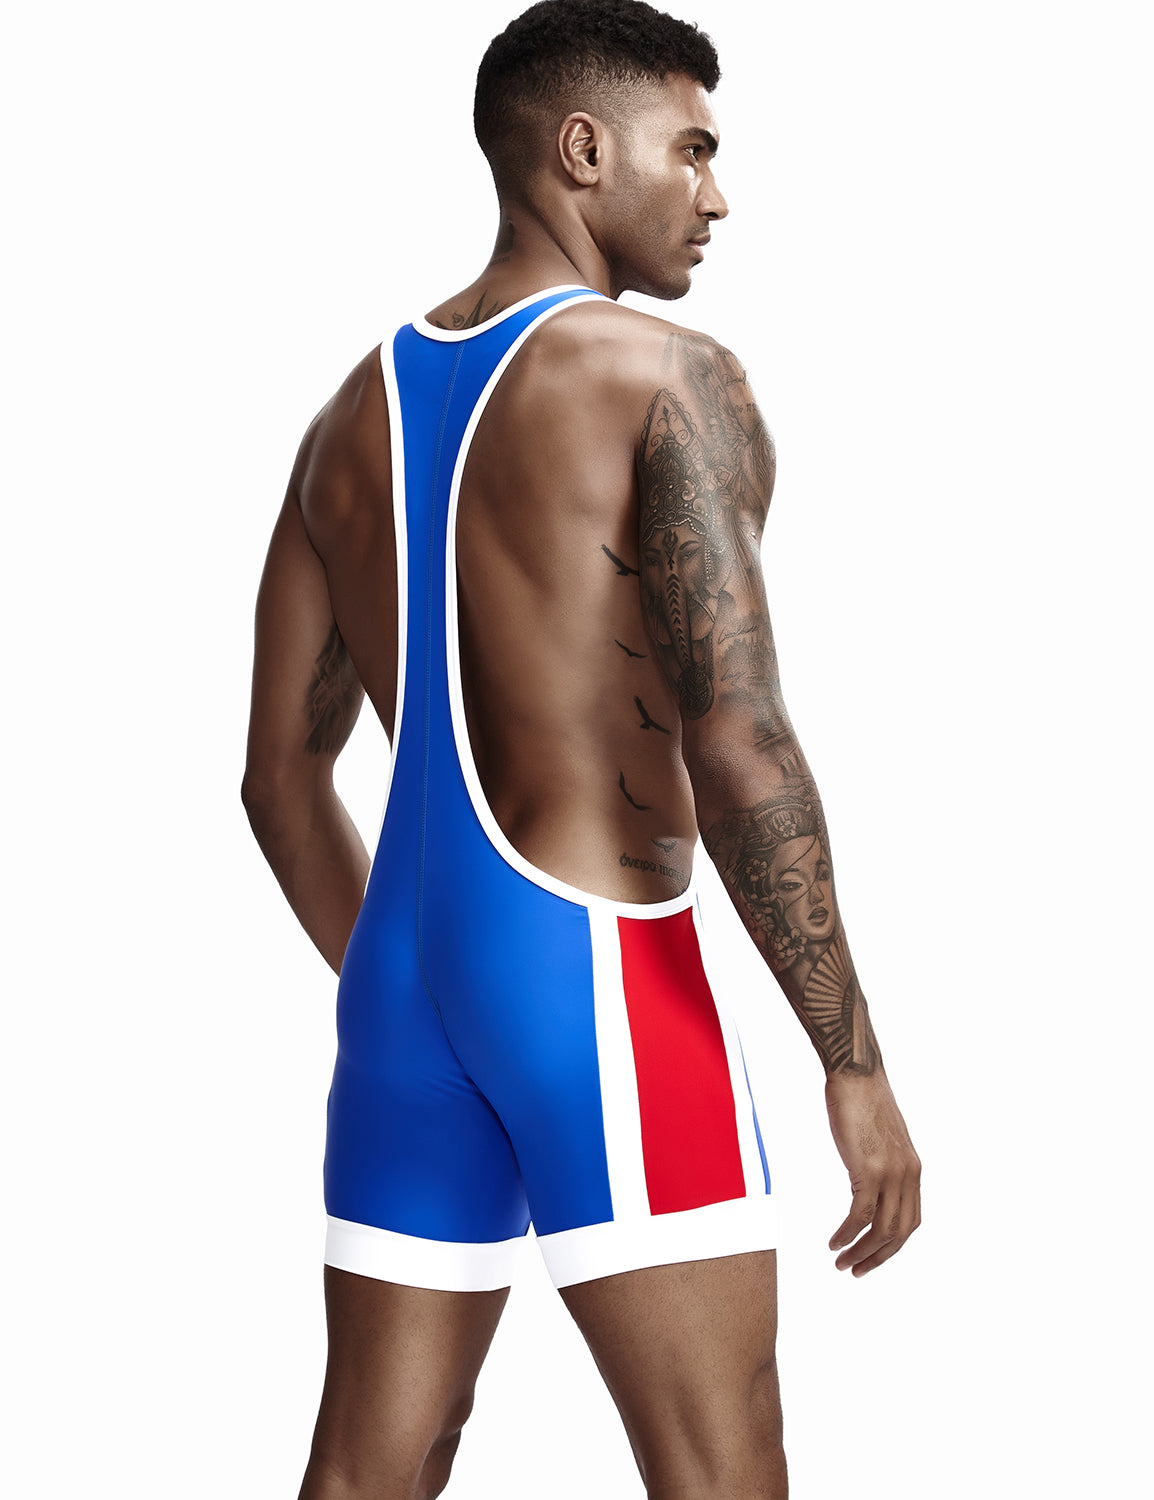 TAUWELL Mens Sexy Fitness Wrestling Leotard Singlet Bodysuit 9701 – SEOBEAN®